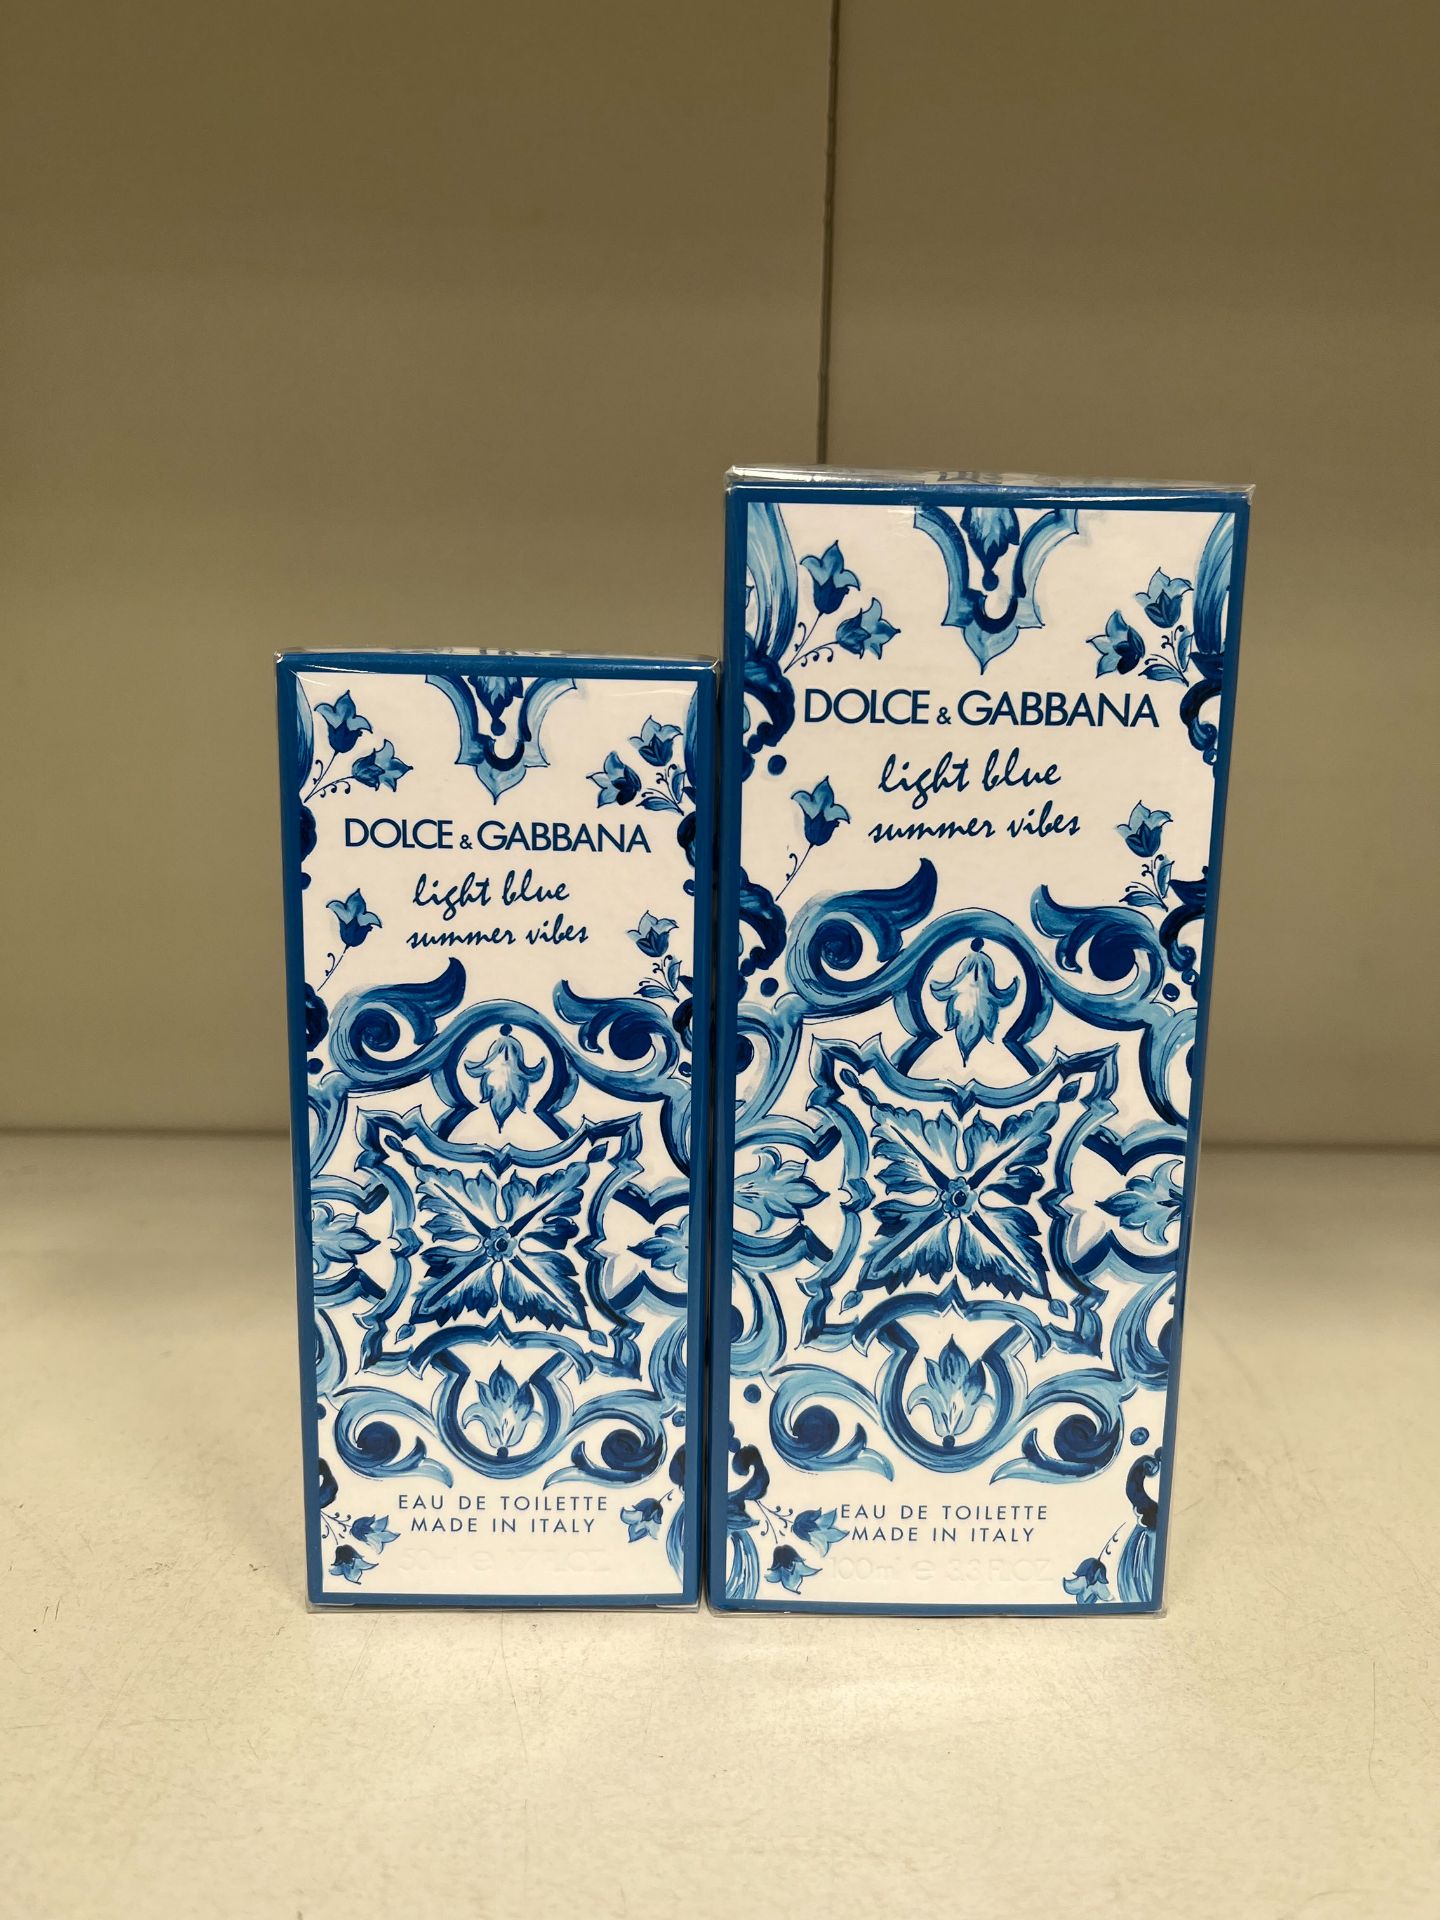 2x Dolce & Gabbana Light Blue Summer Vibes